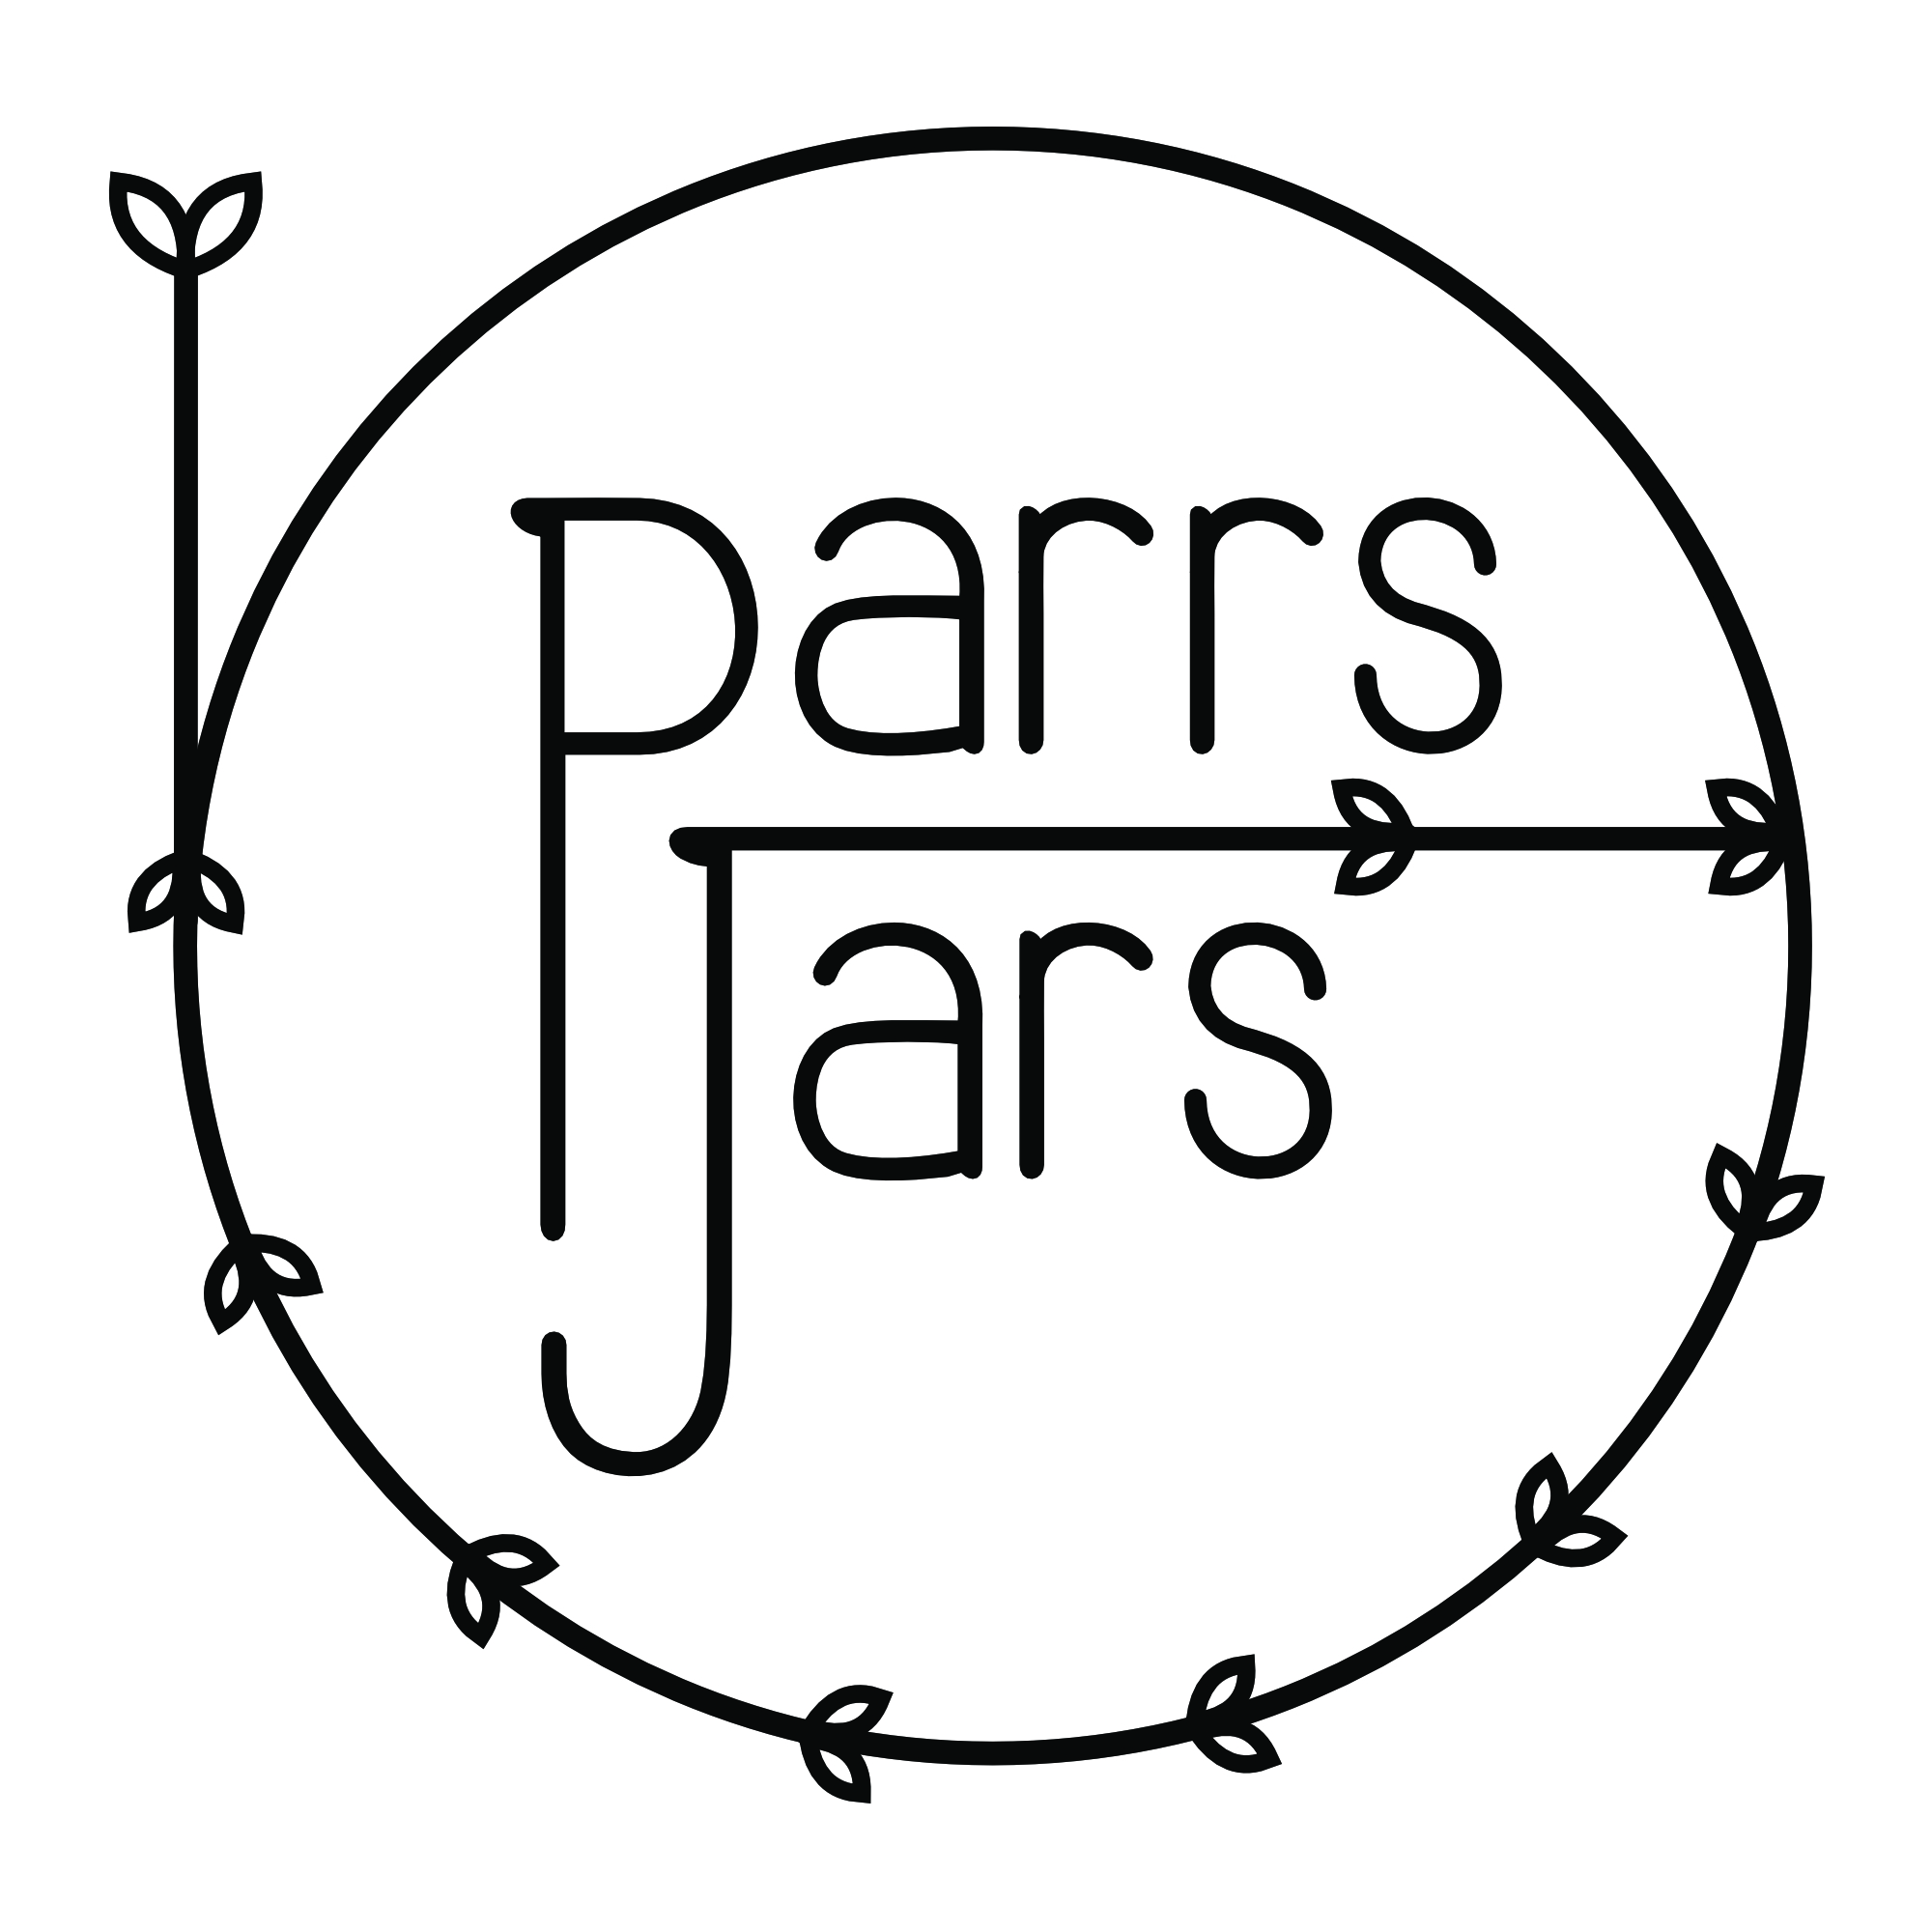 Parrs Jars